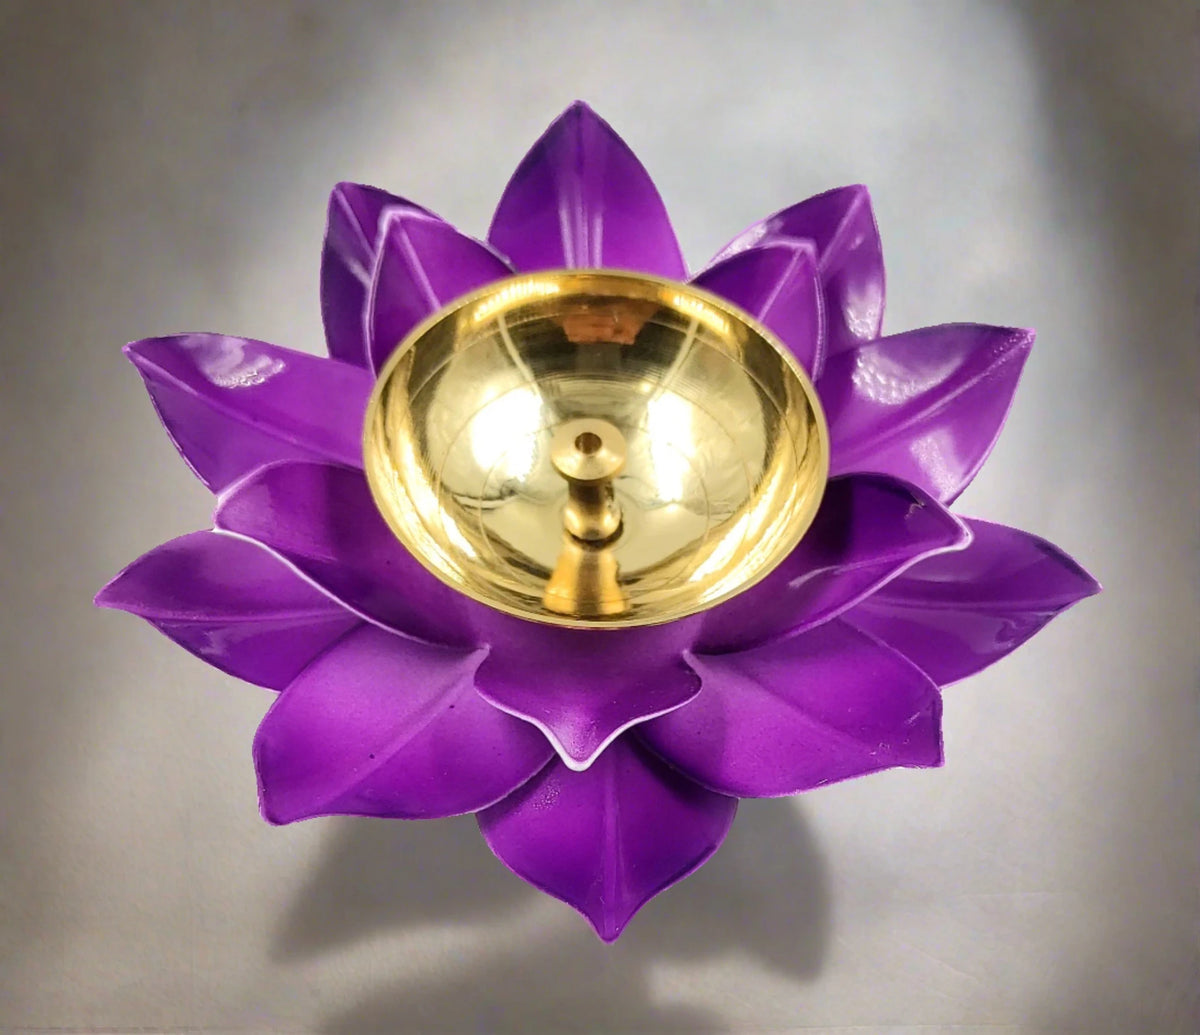 Brass Lotus Kuber Diya Puja Oil Lamp Deepak With Enamel For Home -PURPLE